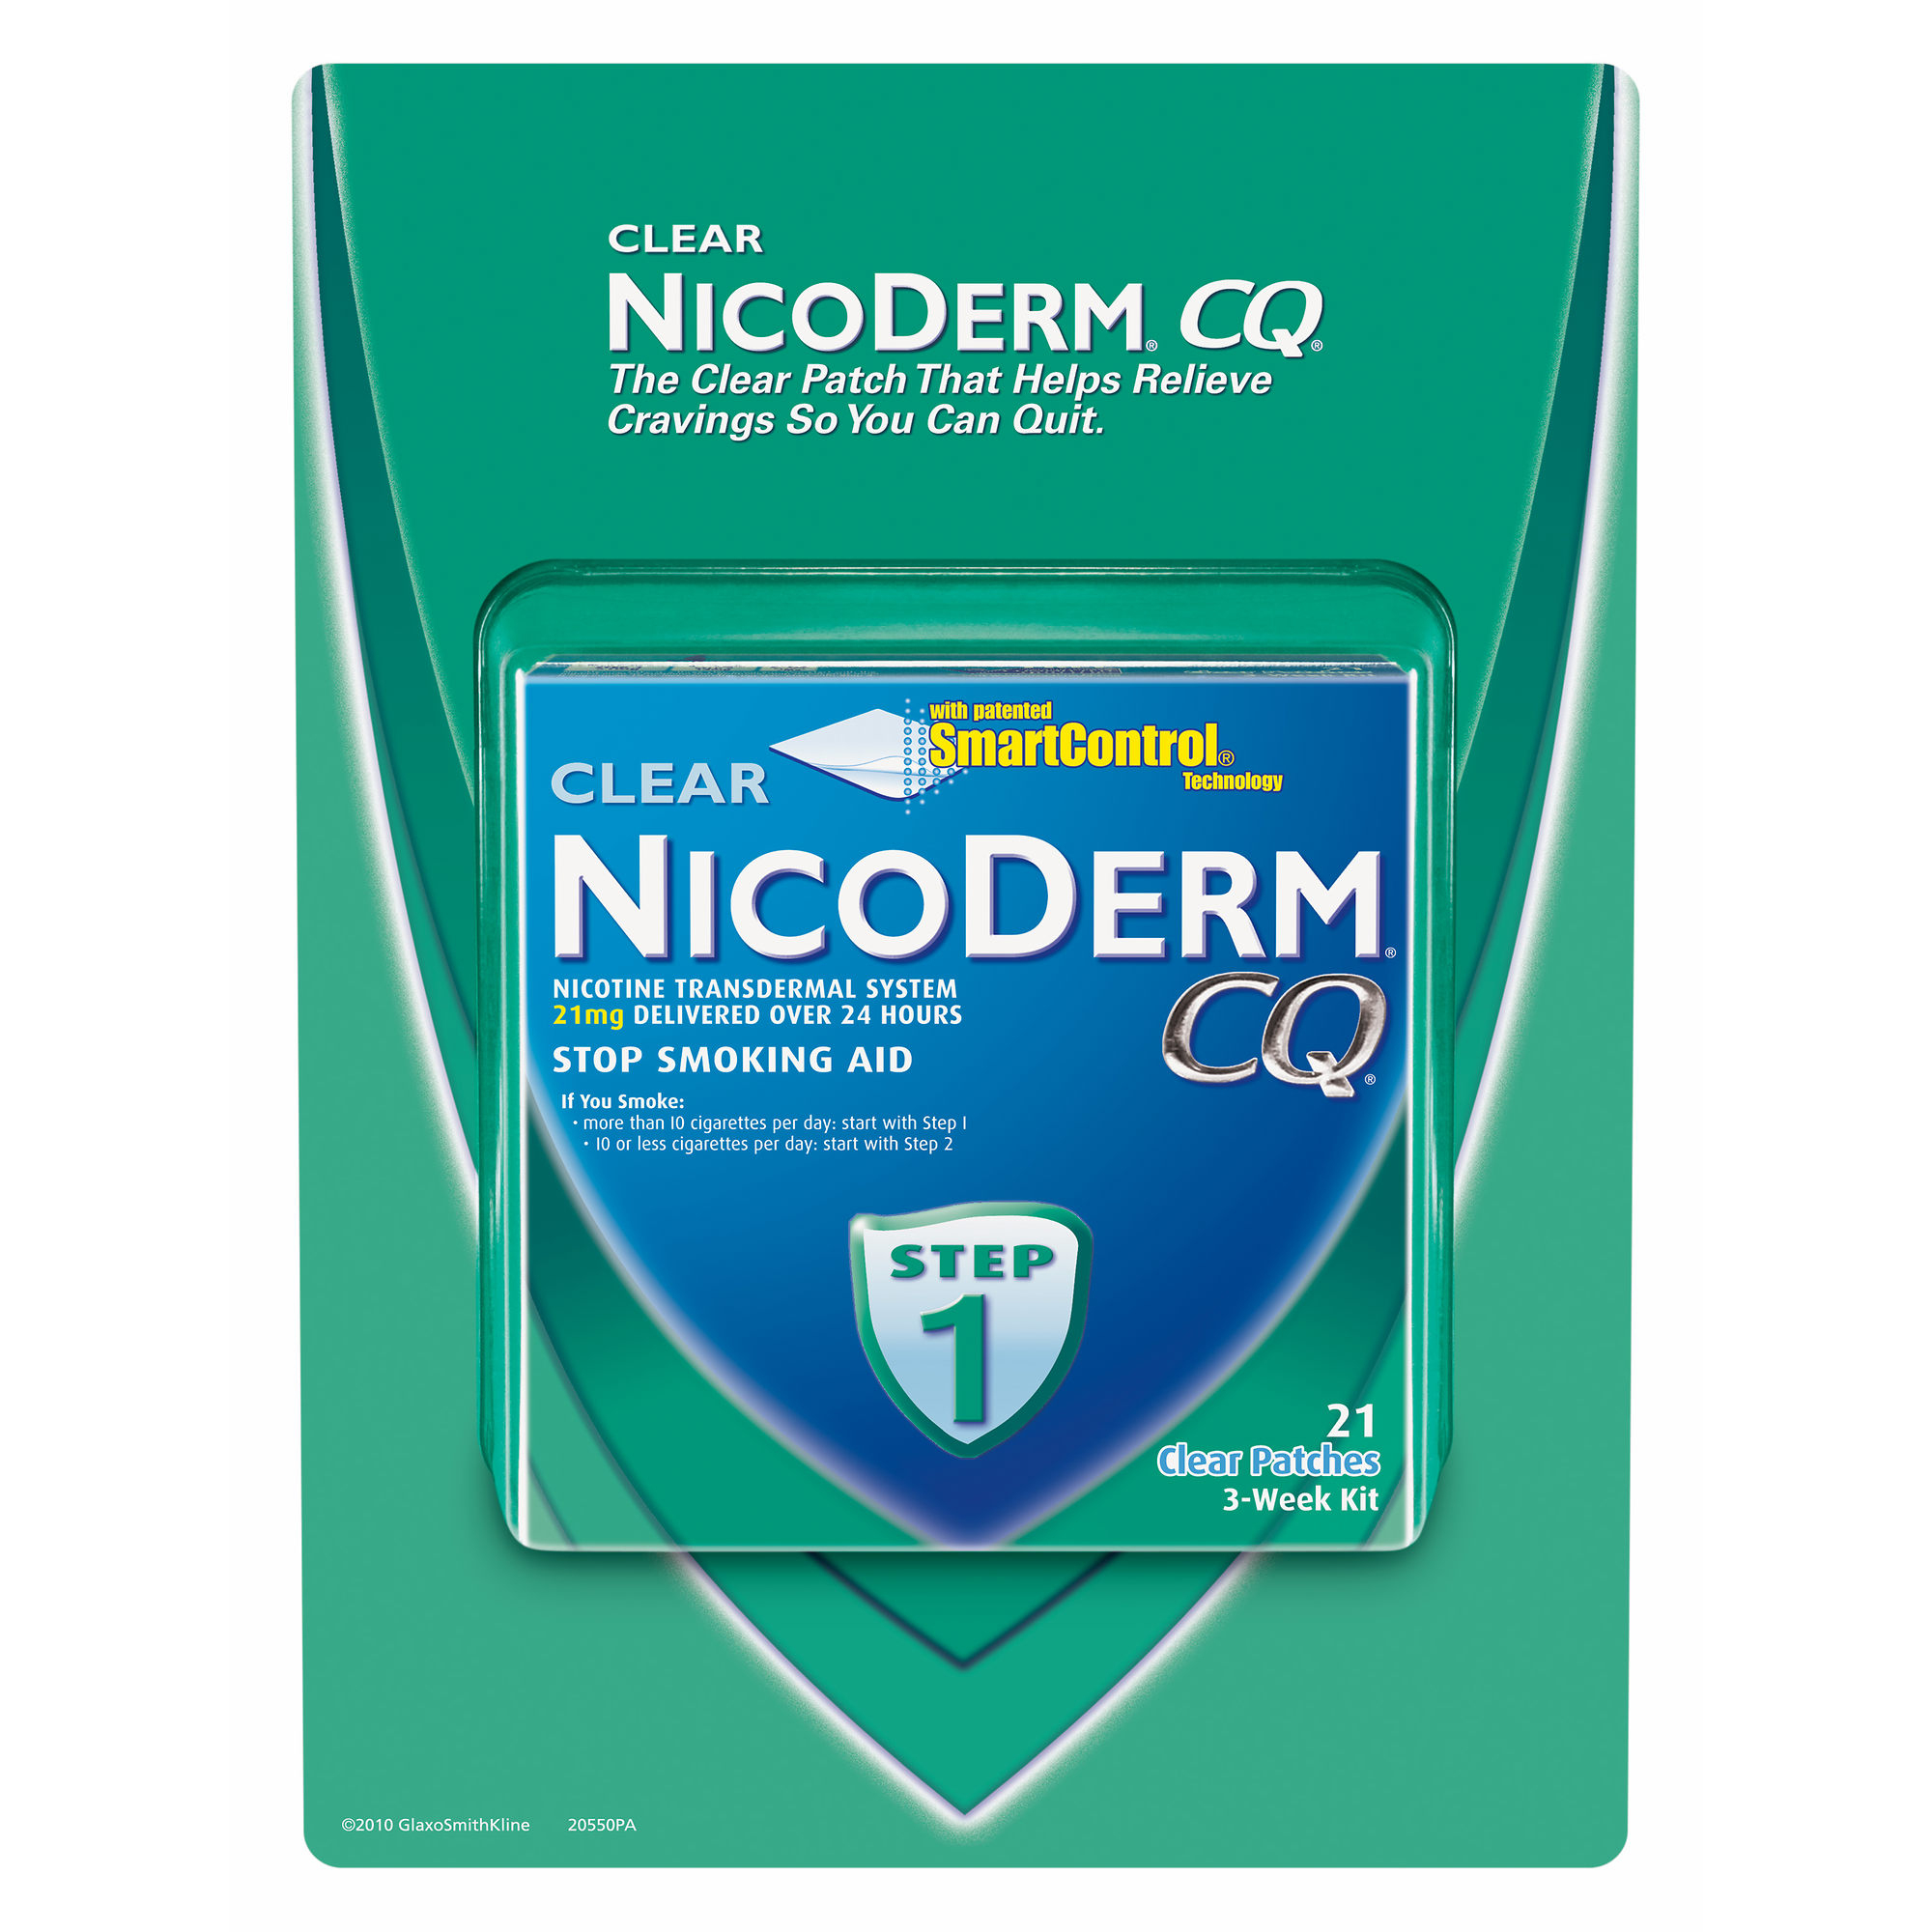 Nicoderm Coupons (Nicorette) - Printable Coupons 2018 - Free Printable Nicotine Patch Coupons